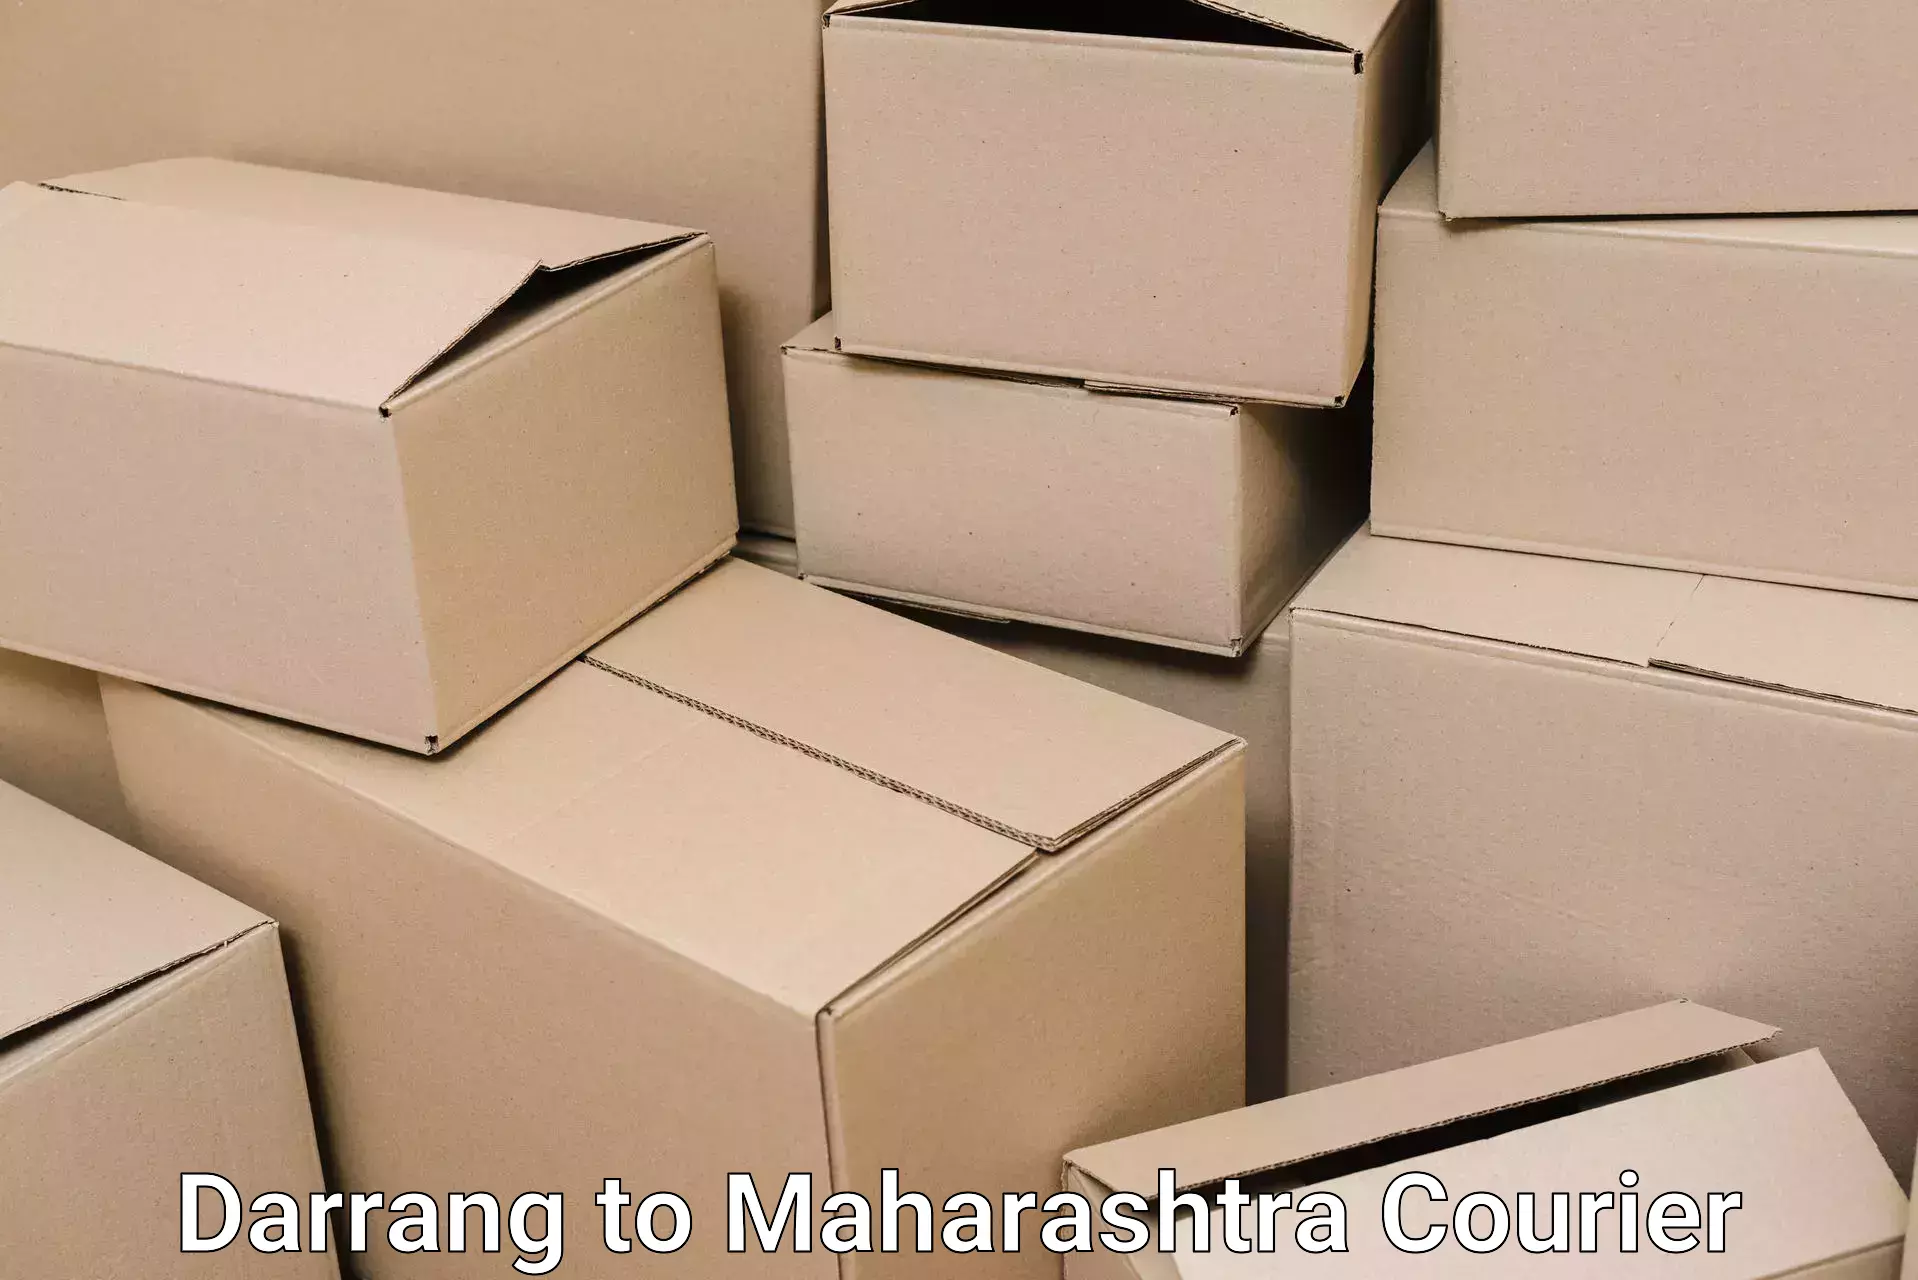 Trusted moving company Darrang to Maharashtra